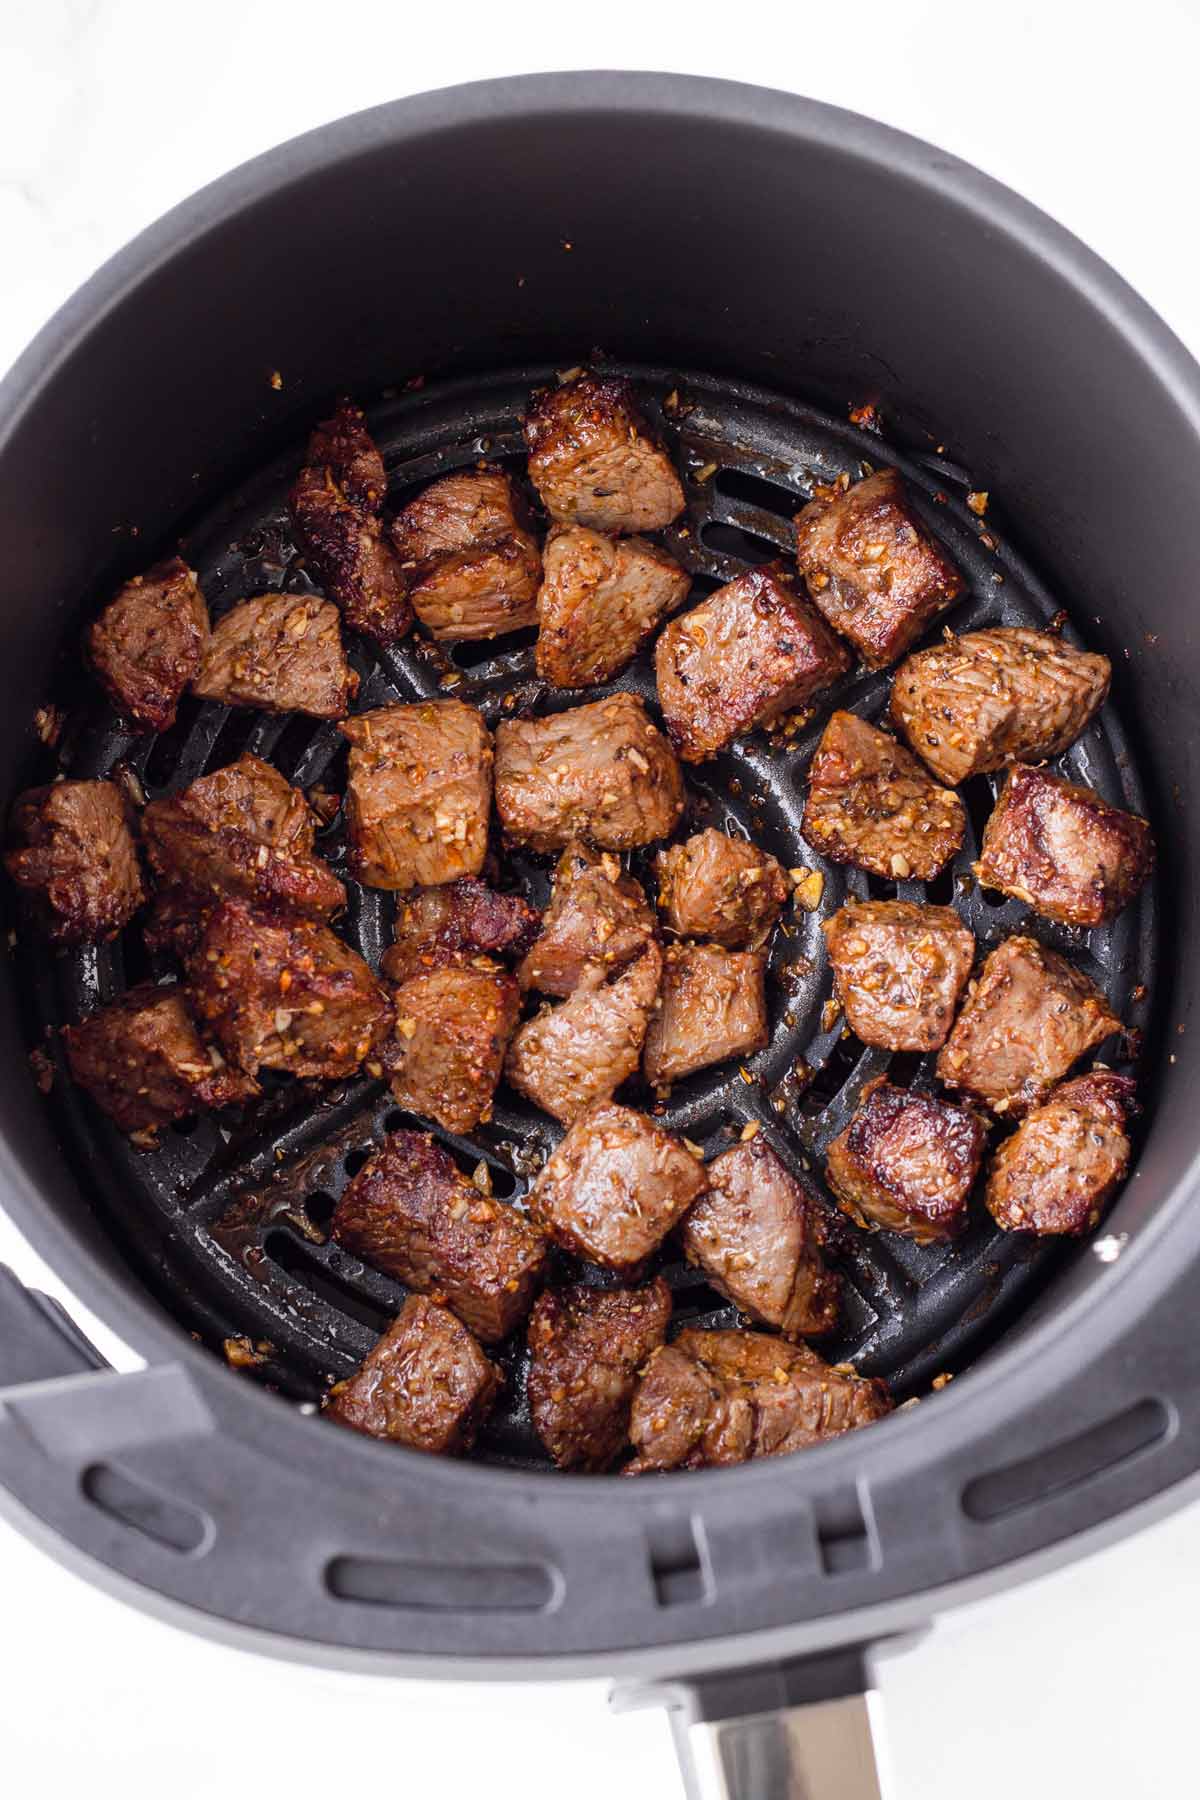 cooked steak bites inside a large air fryer basket